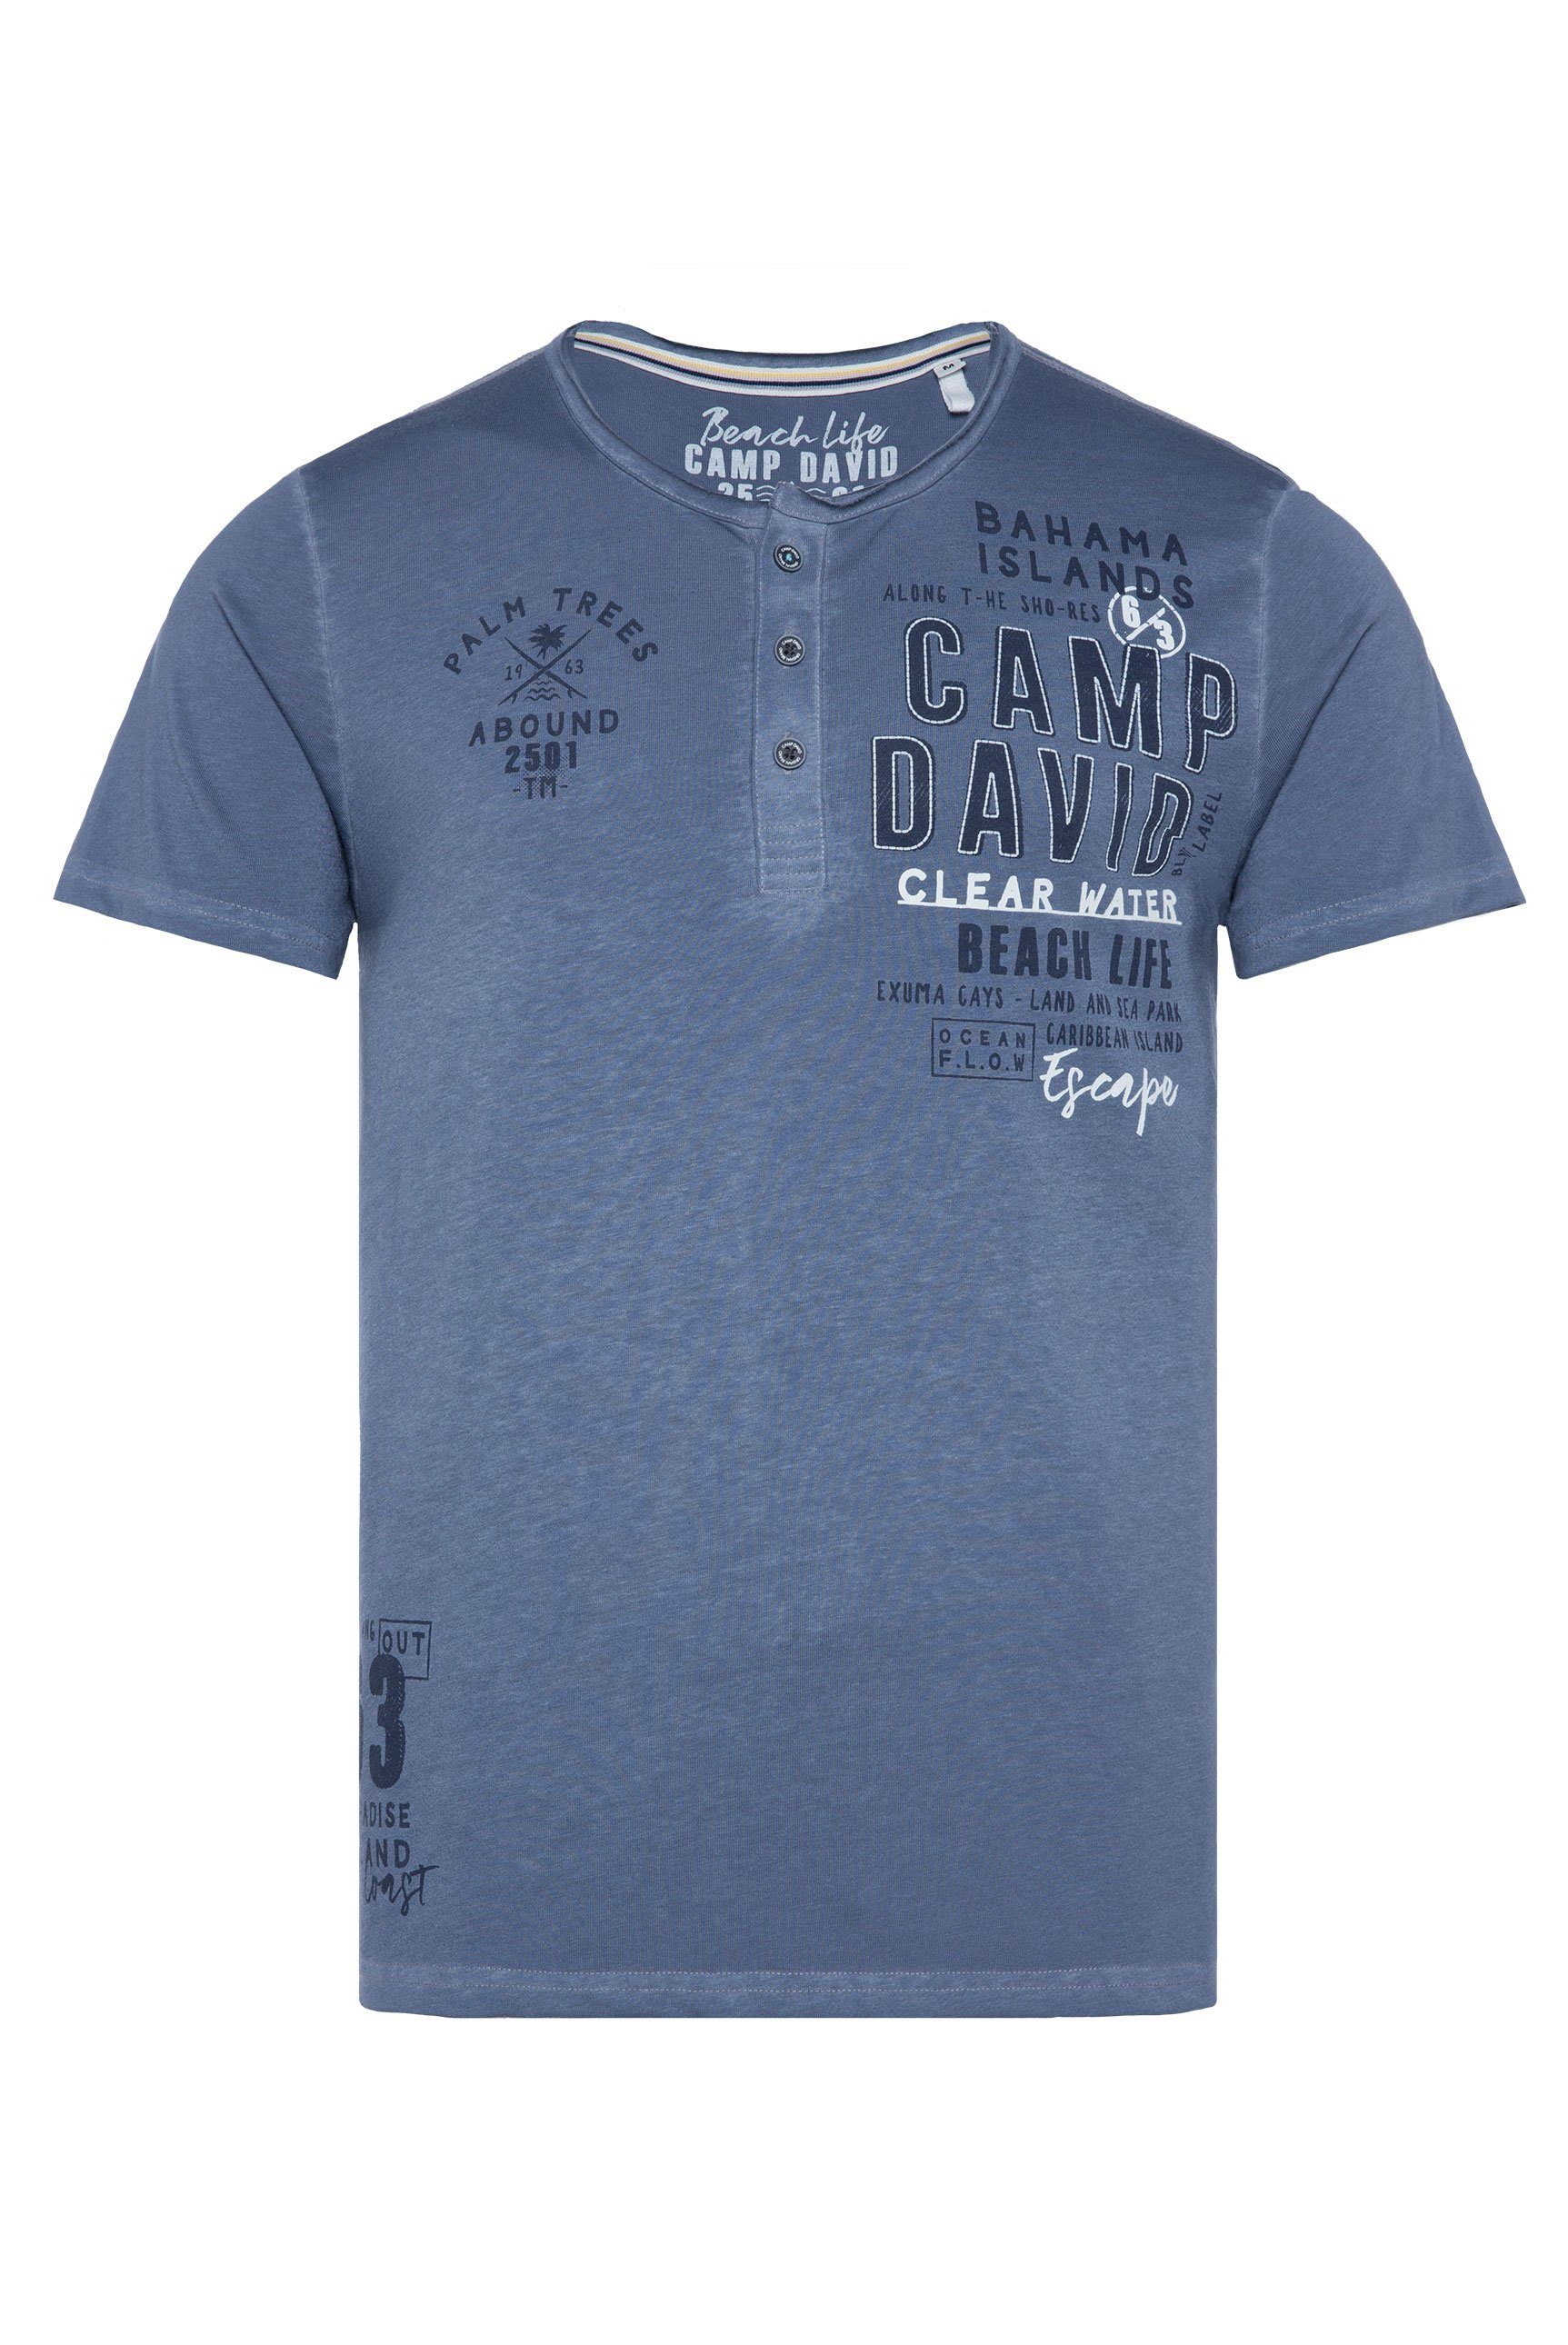 CAMP DAVID T-Shirt Kontrastnähten grey surf mit